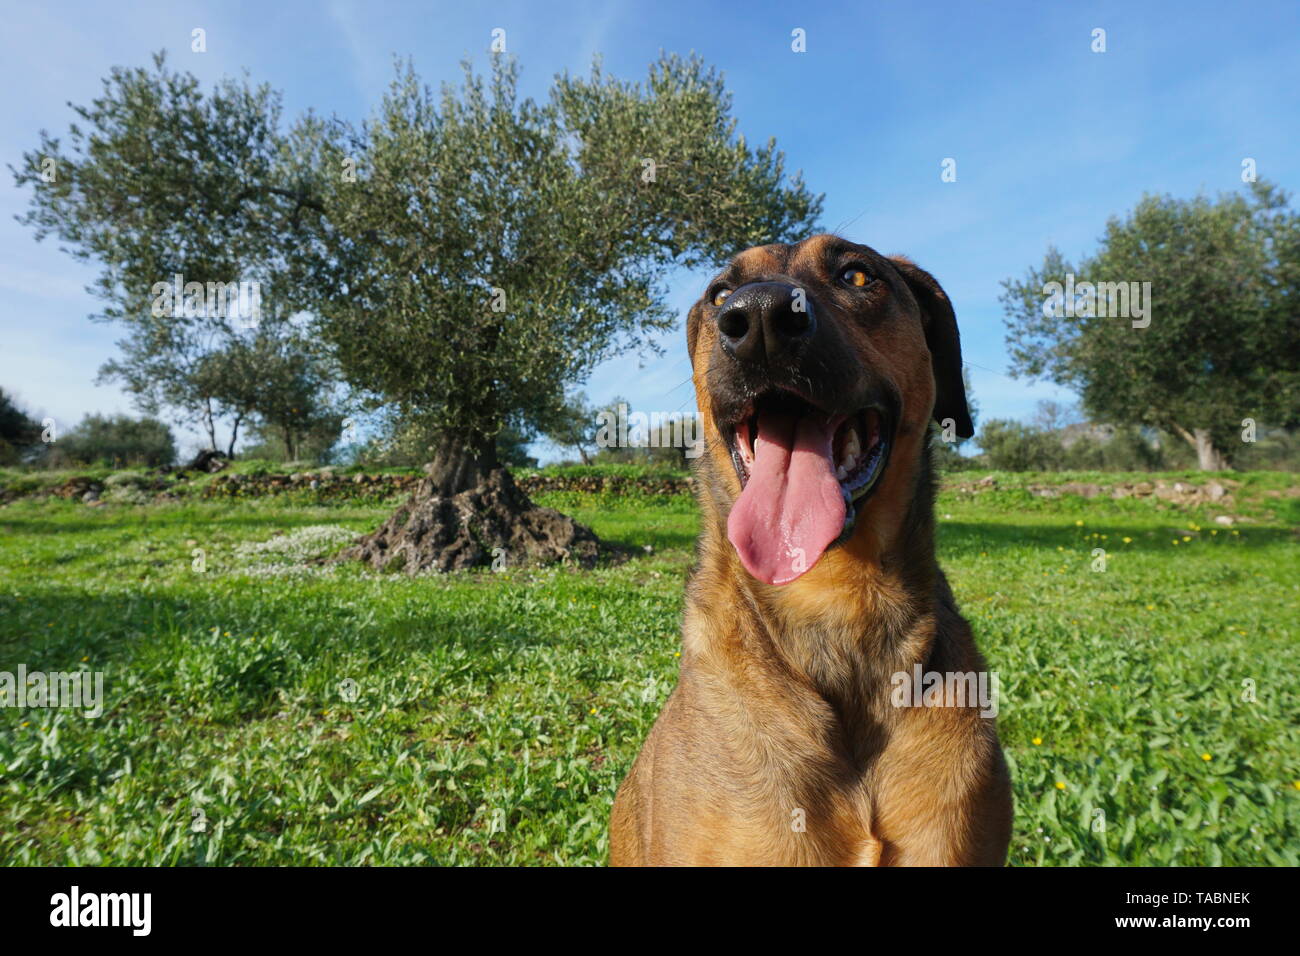 Divertente faccia di un cane in primo piano con albero di olivo in background, Malinois Labrador mixed-razza cane, Spagna Foto Stock